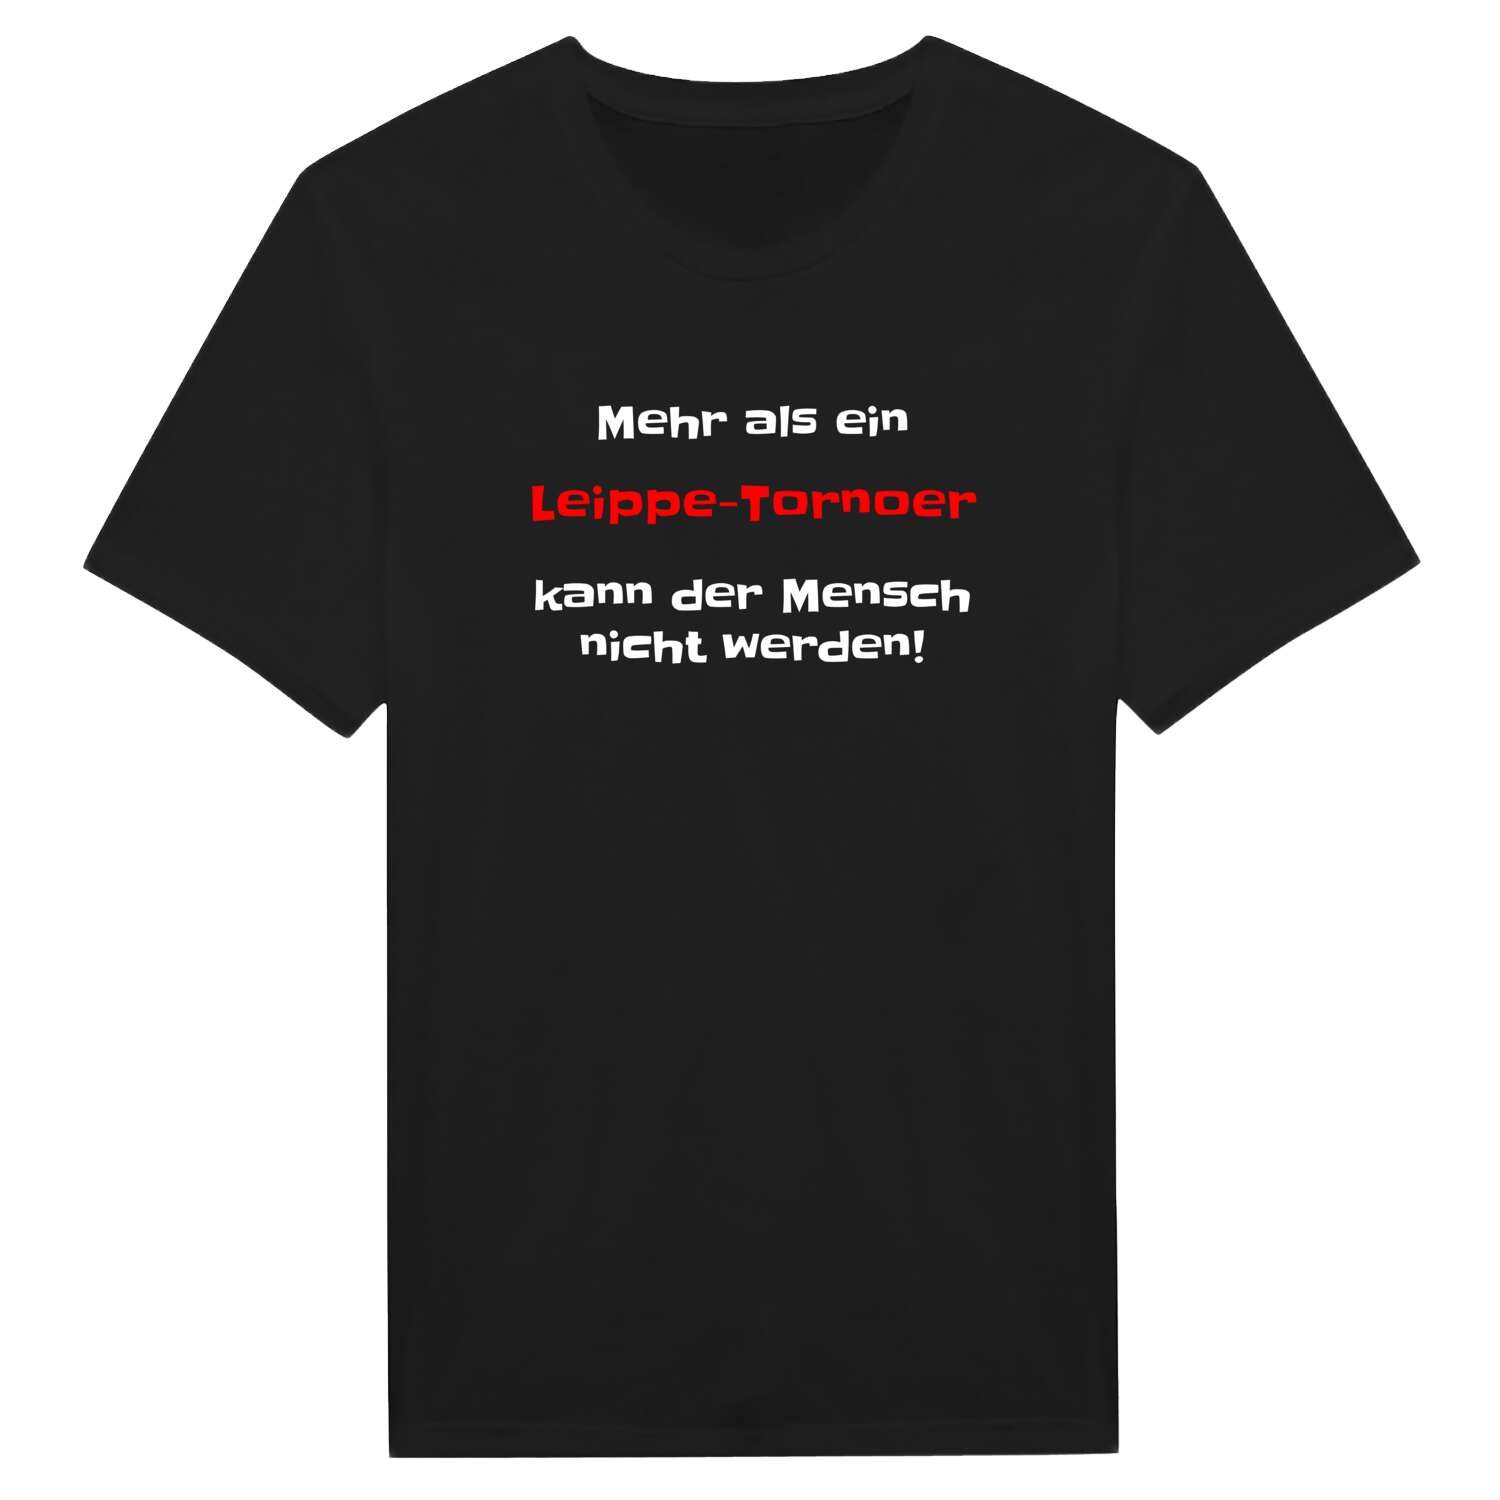 Leippe-Torno T-Shirt »Mehr als ein«